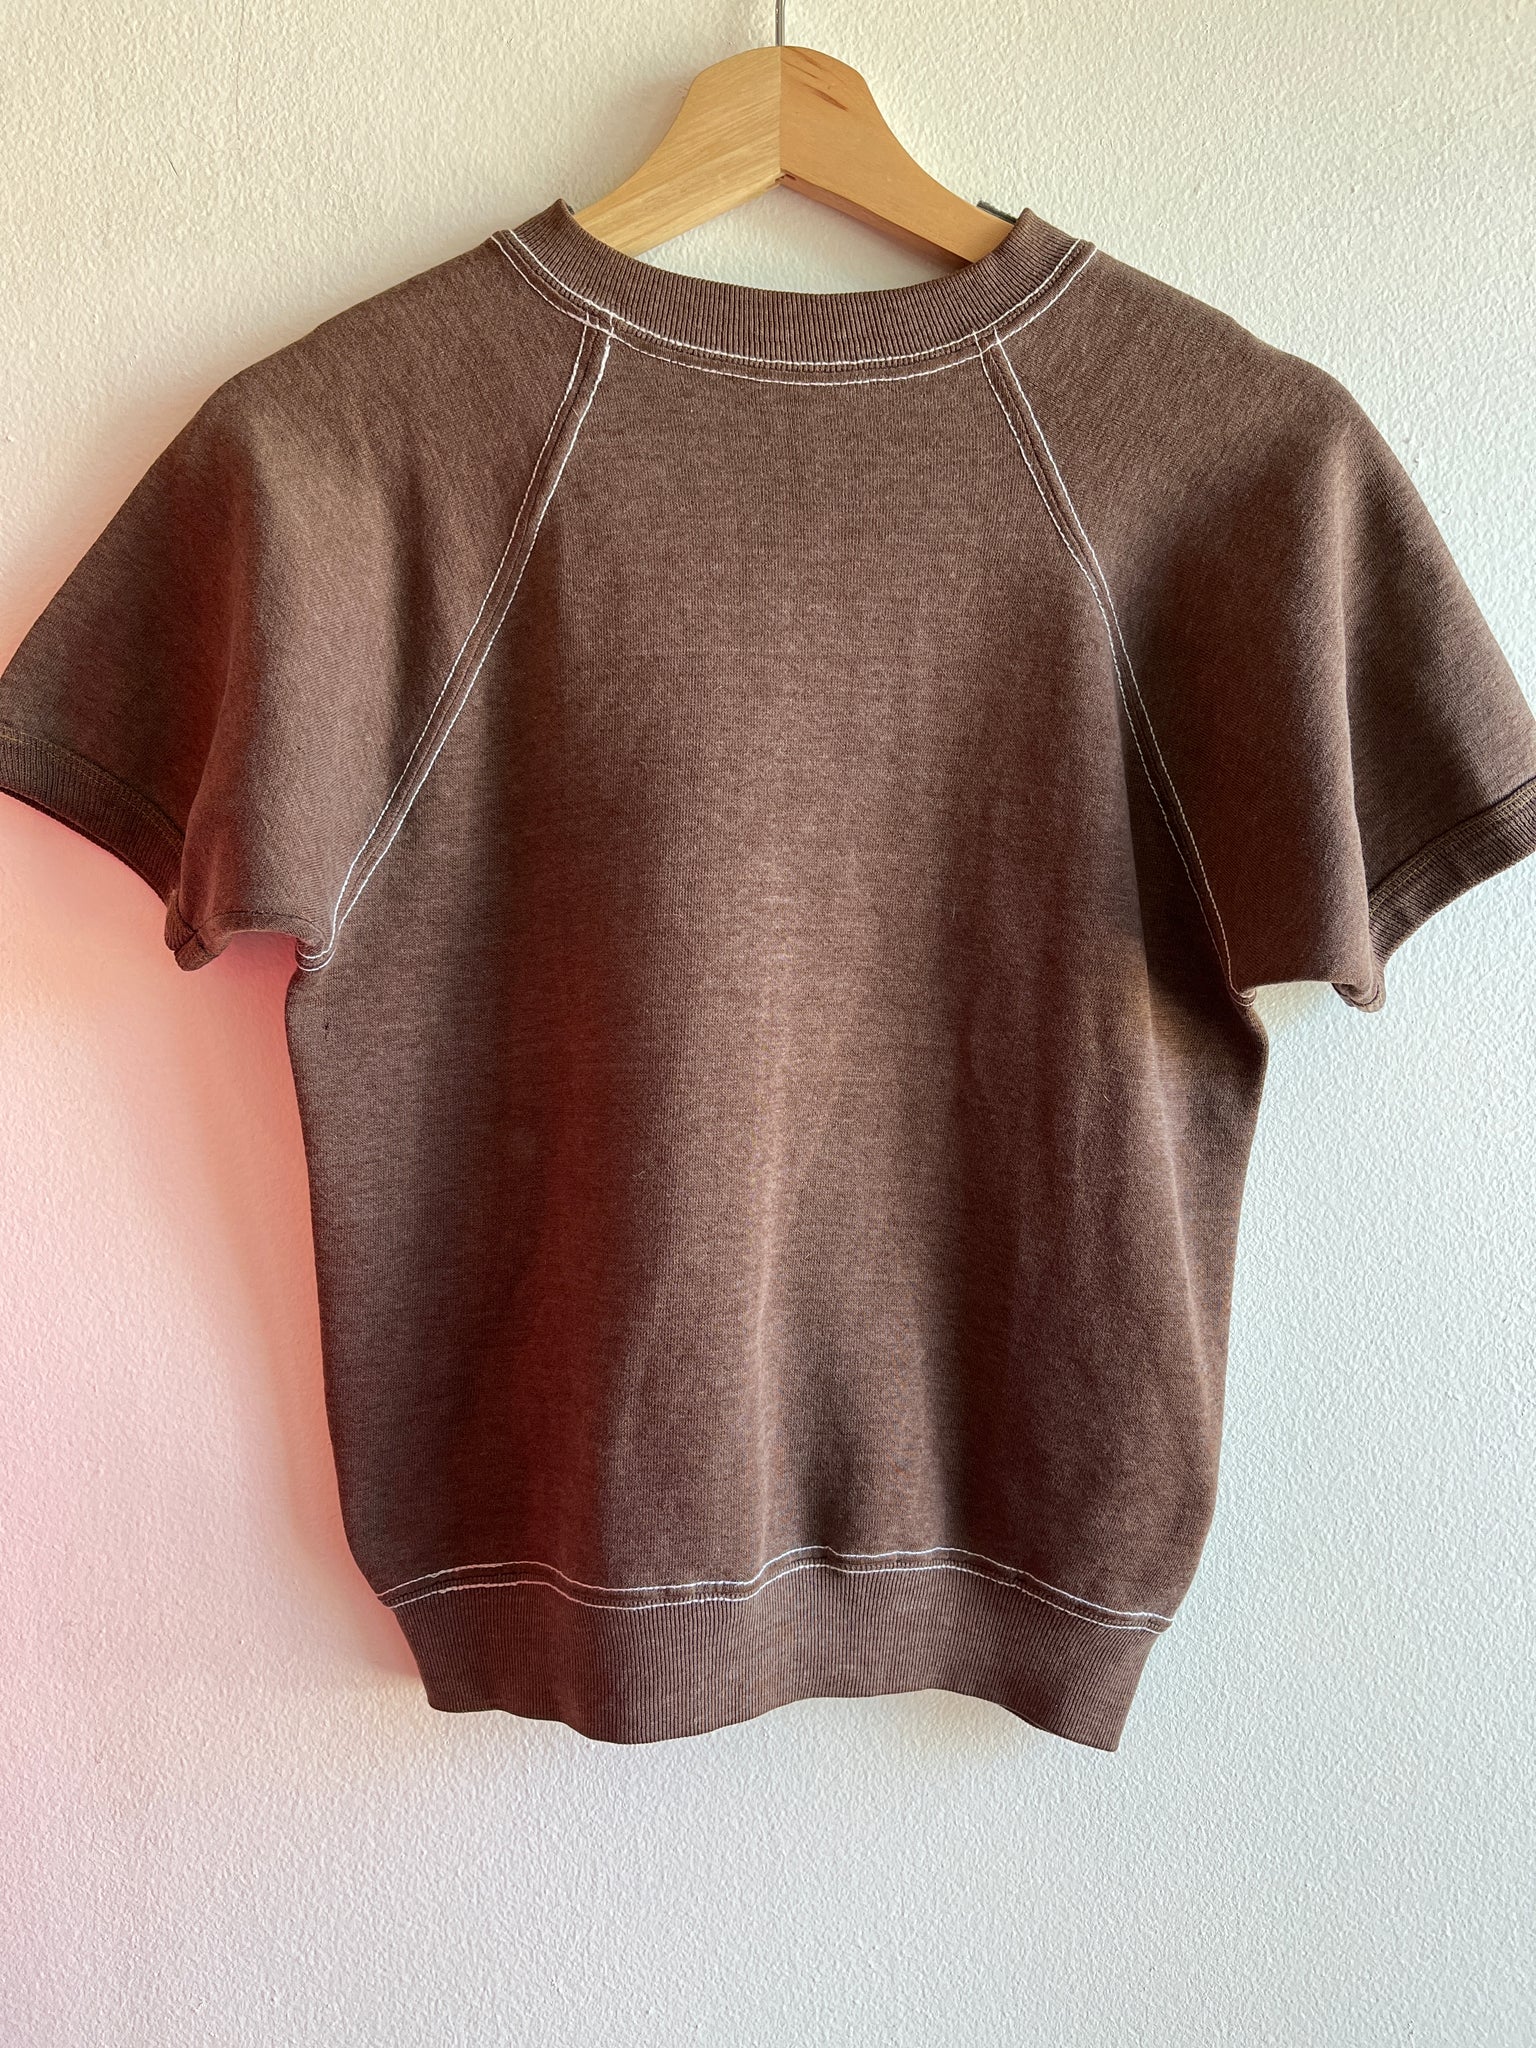 Vintage 1970’s Brown Short-Sleeved Sweatshirt